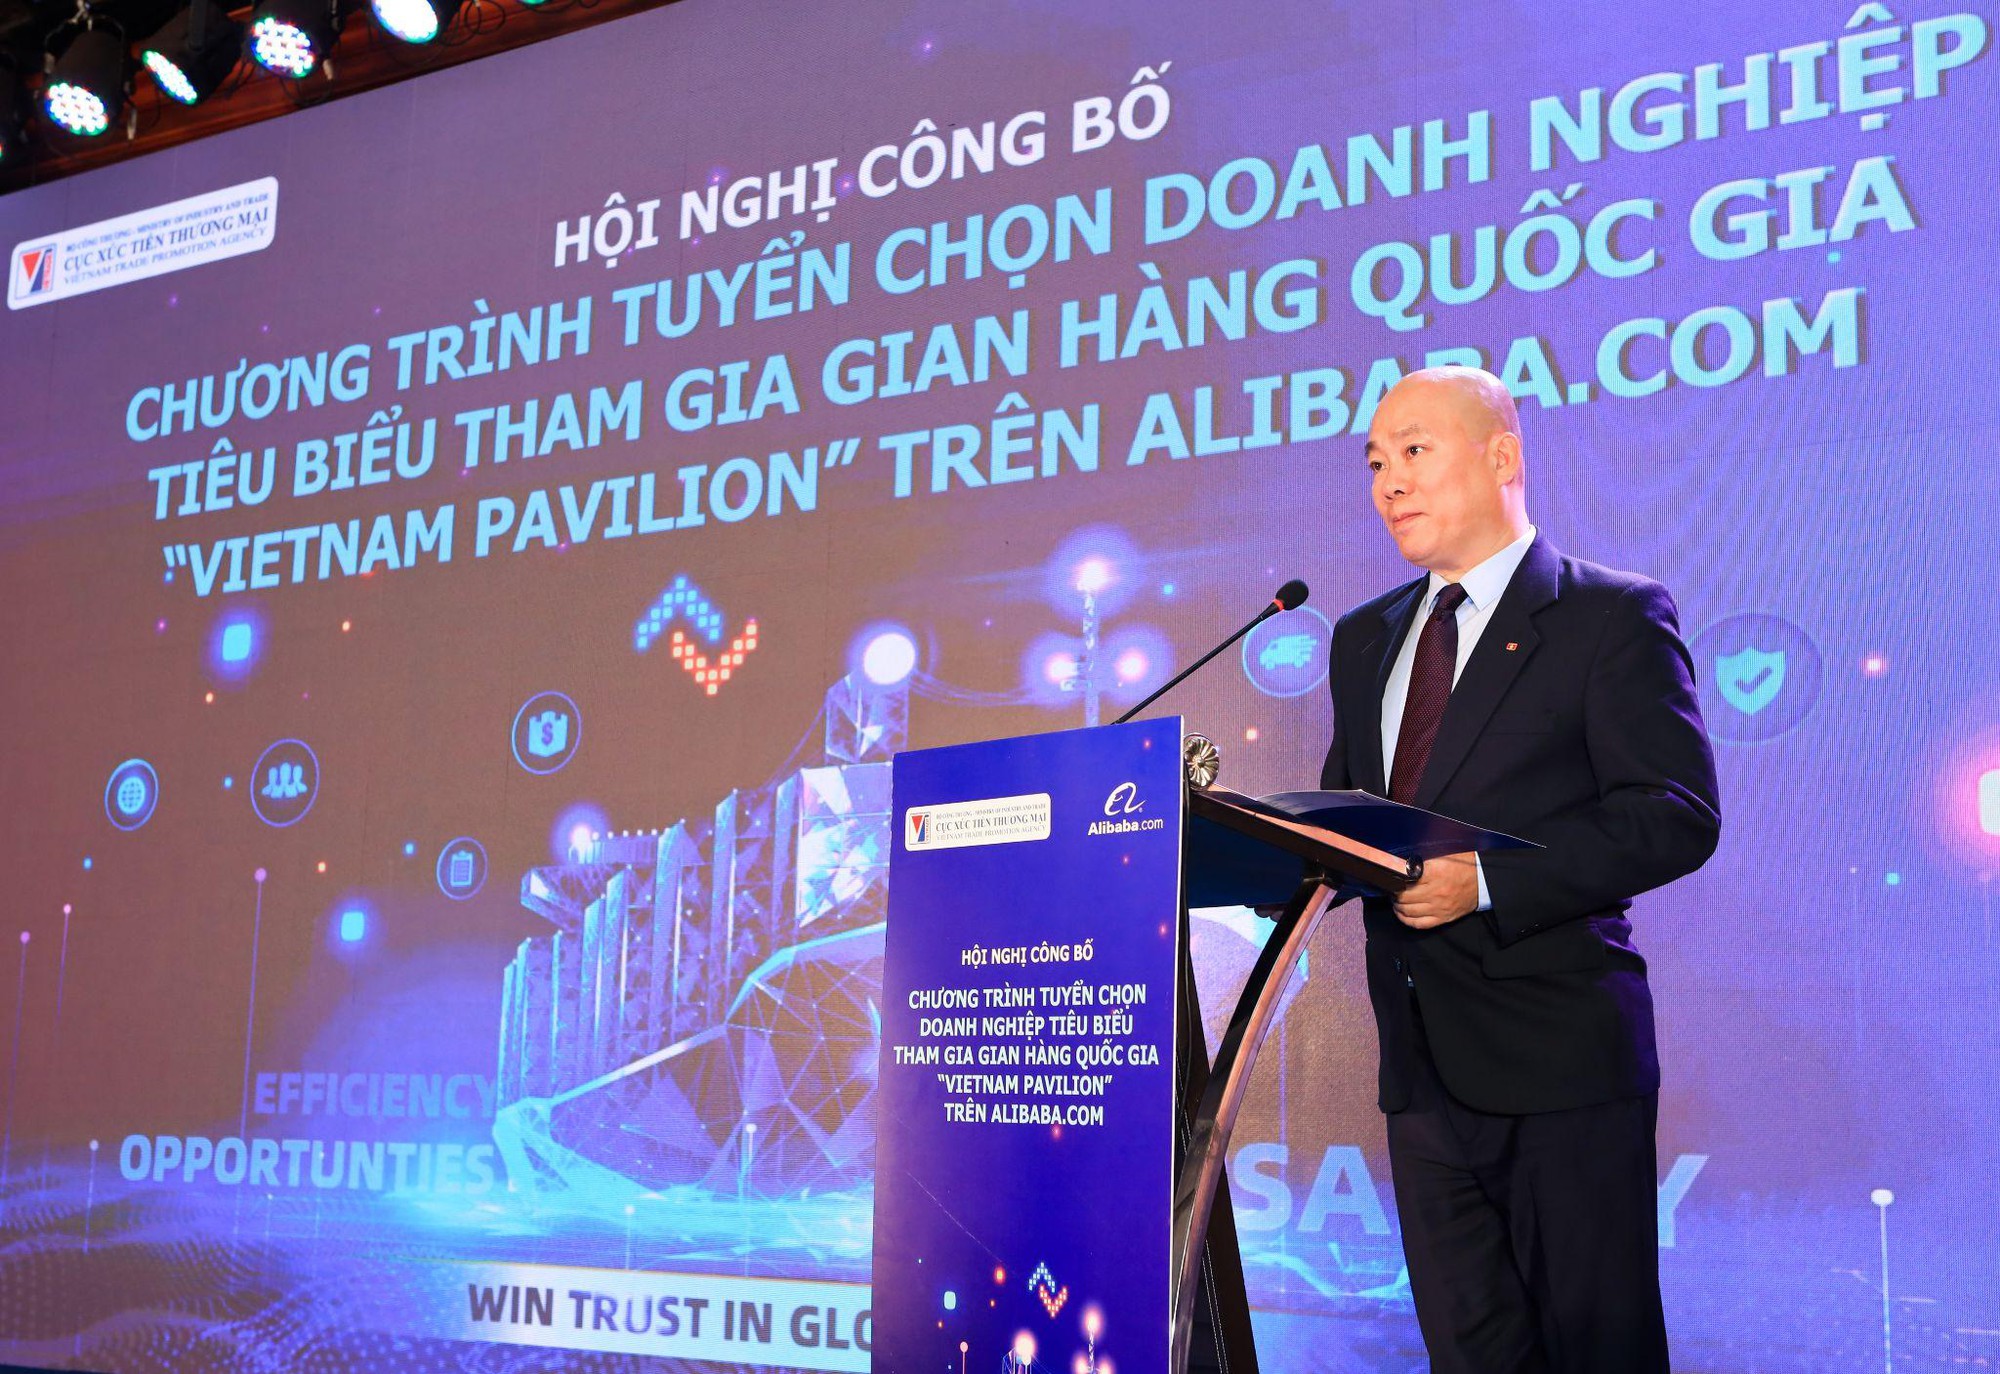 Khởi động chương trình tuyển chọn 100 doanh nghiệp tiêu biểu tham gia Gian hàng Quốc gia Việt Nam - Ảnh 2.